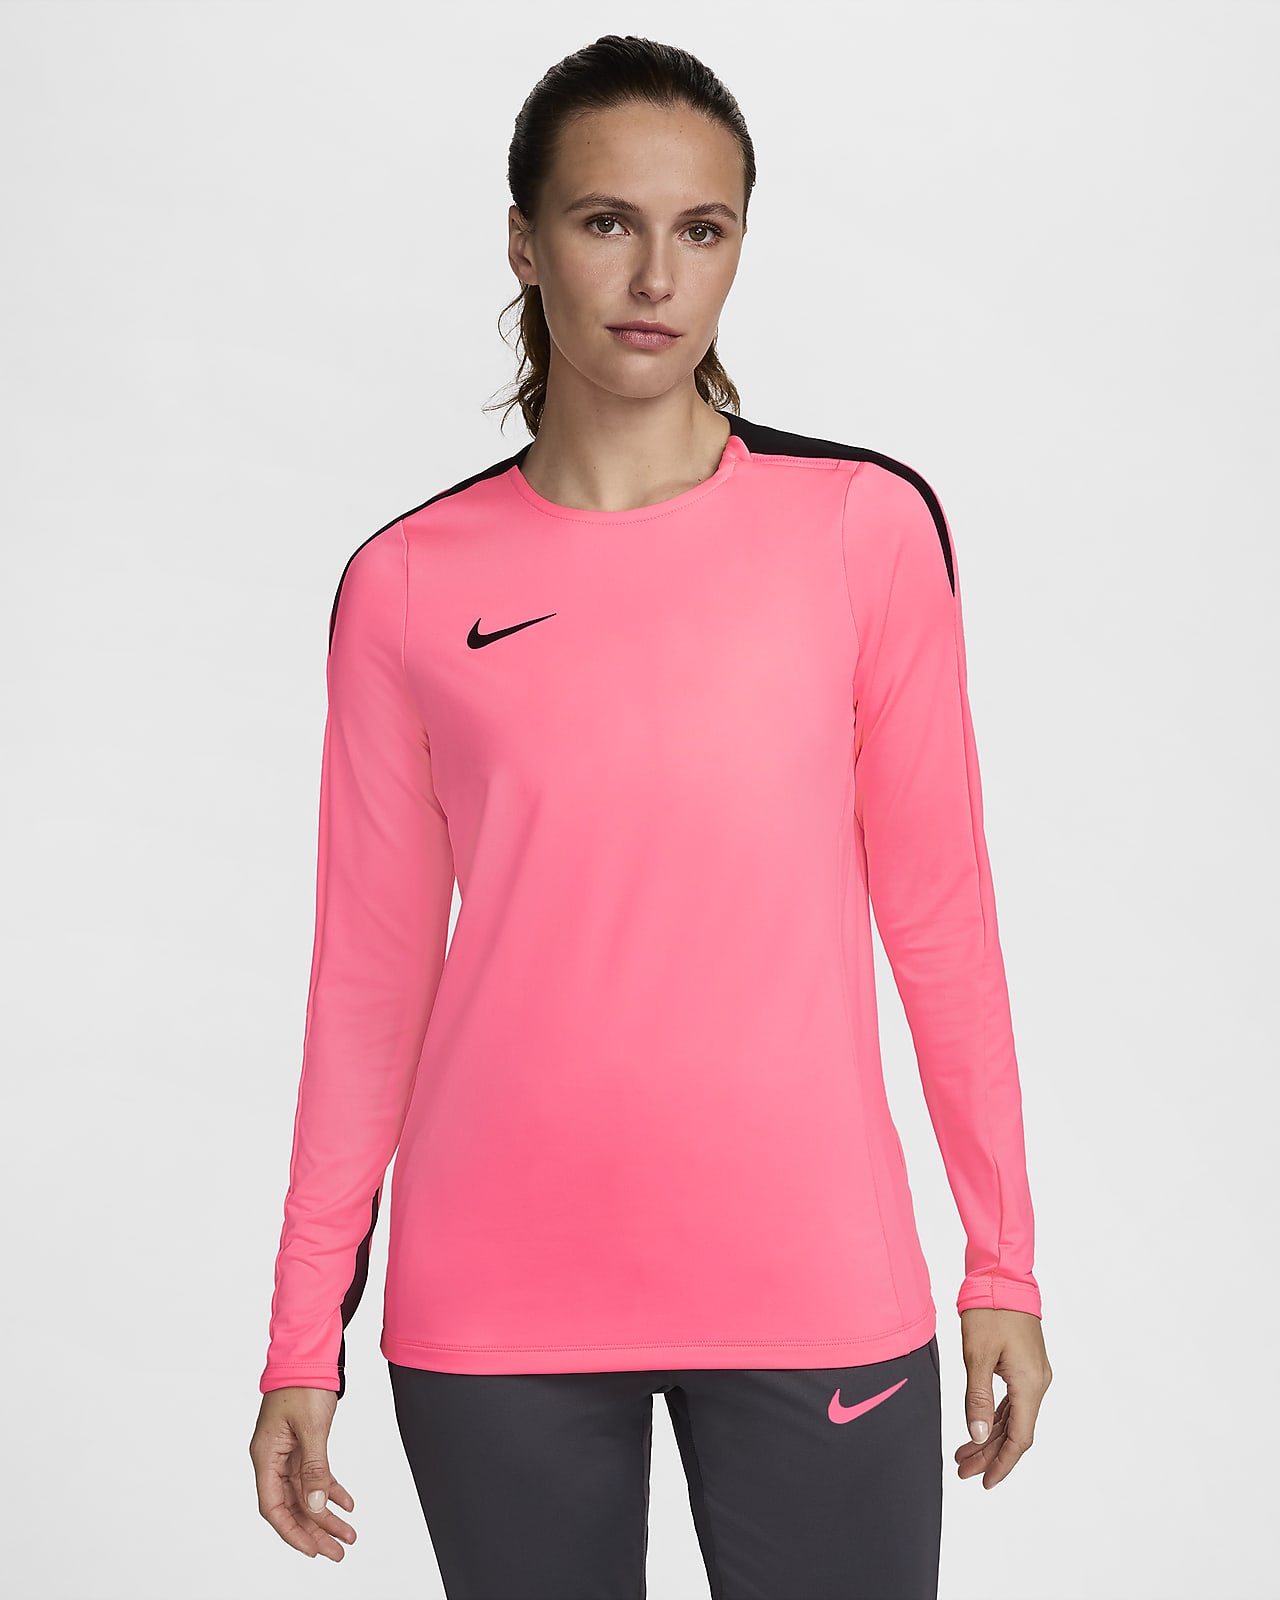 Nike Strike Dri-FIT voetbaltop met ronde hals voor dames